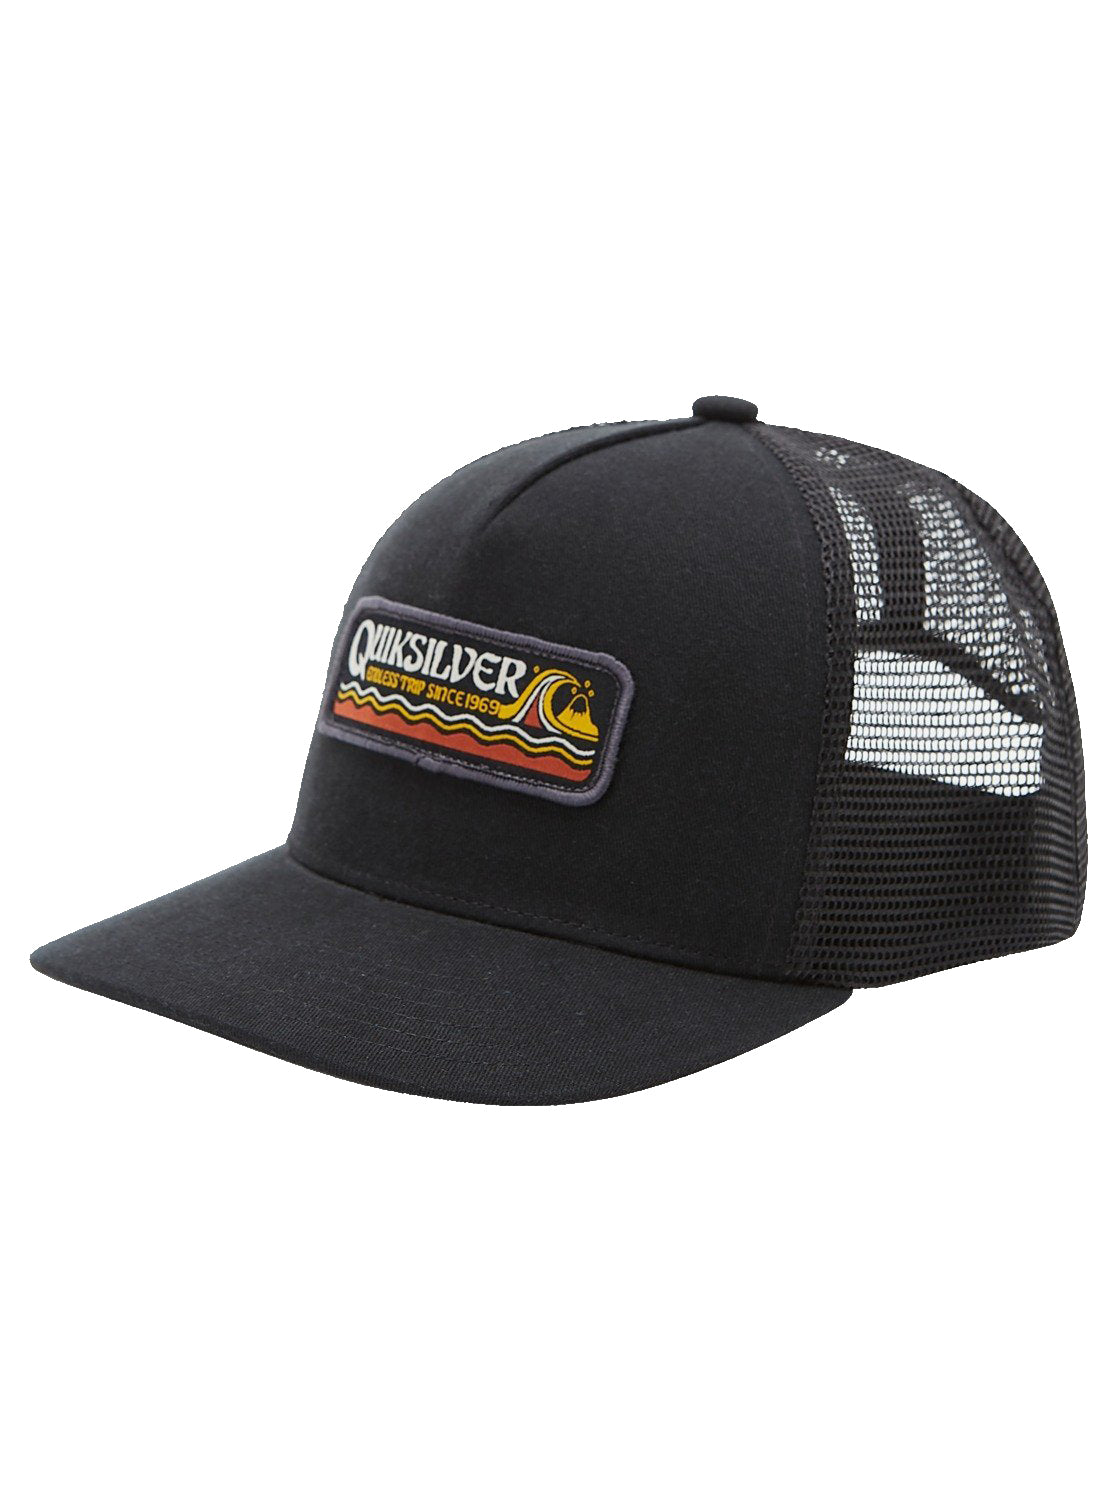 Quiksilver Tweak Slanders Snapback Hat